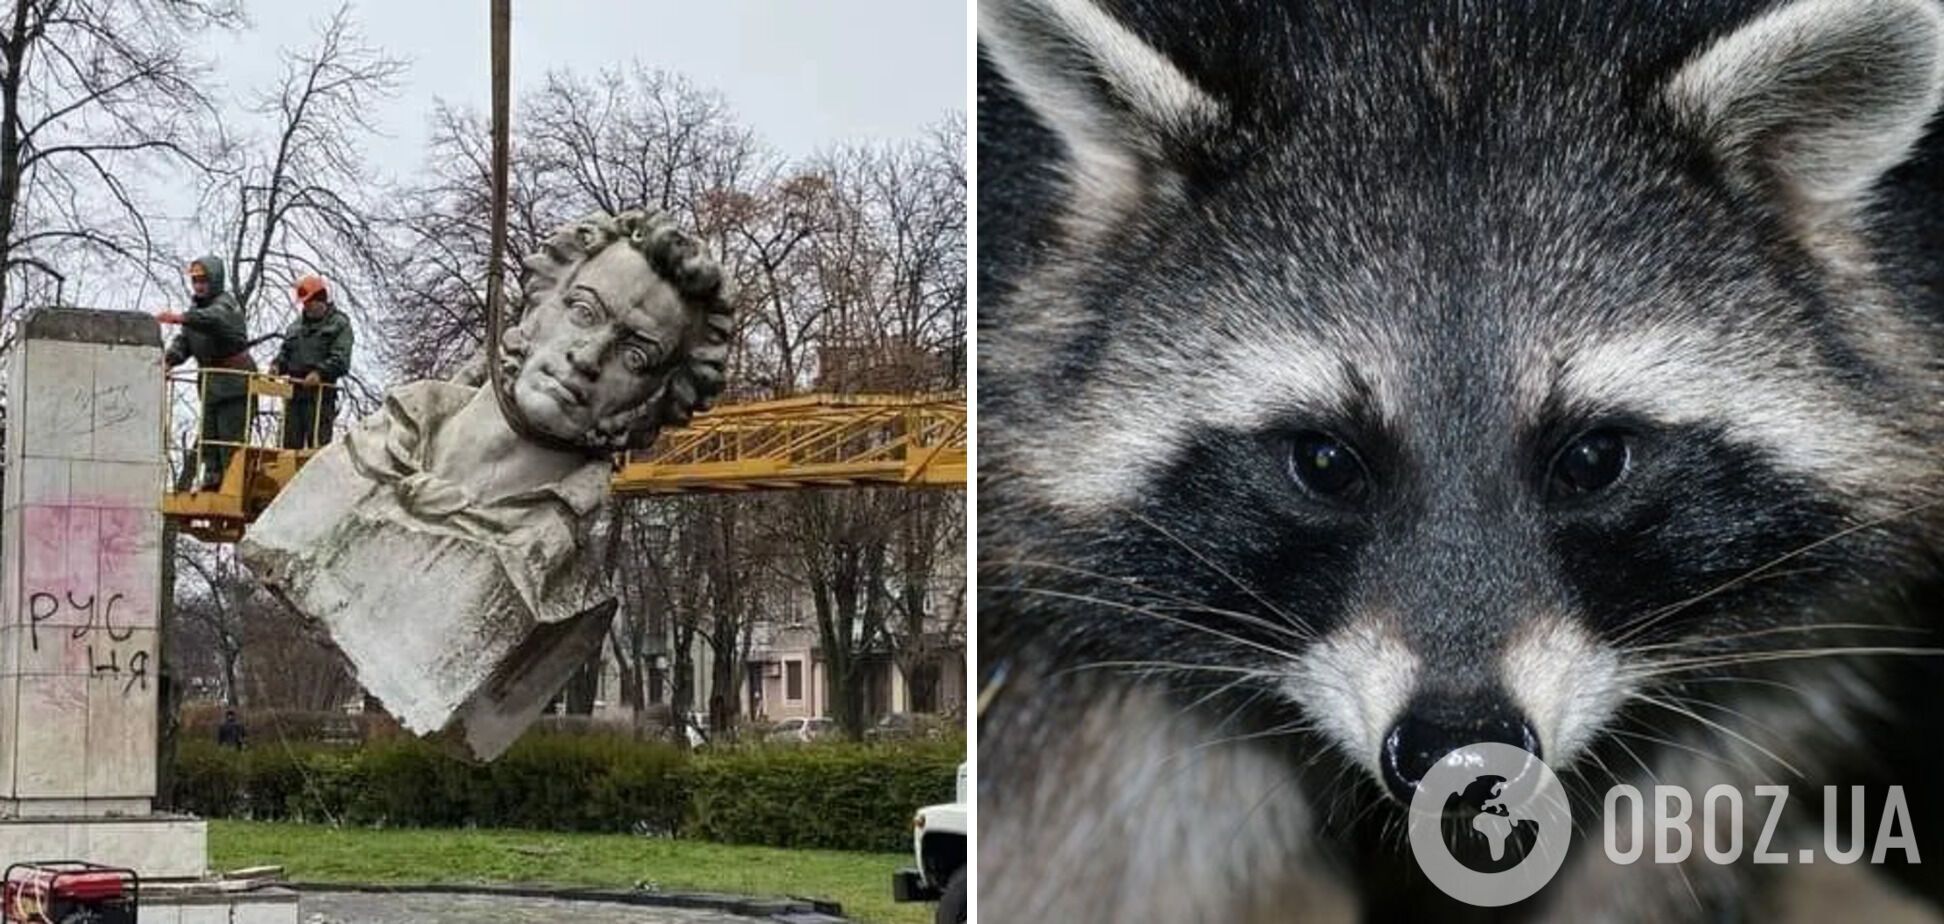 Украина готова обменять снесенные памятники Пушкину на херсонского енота